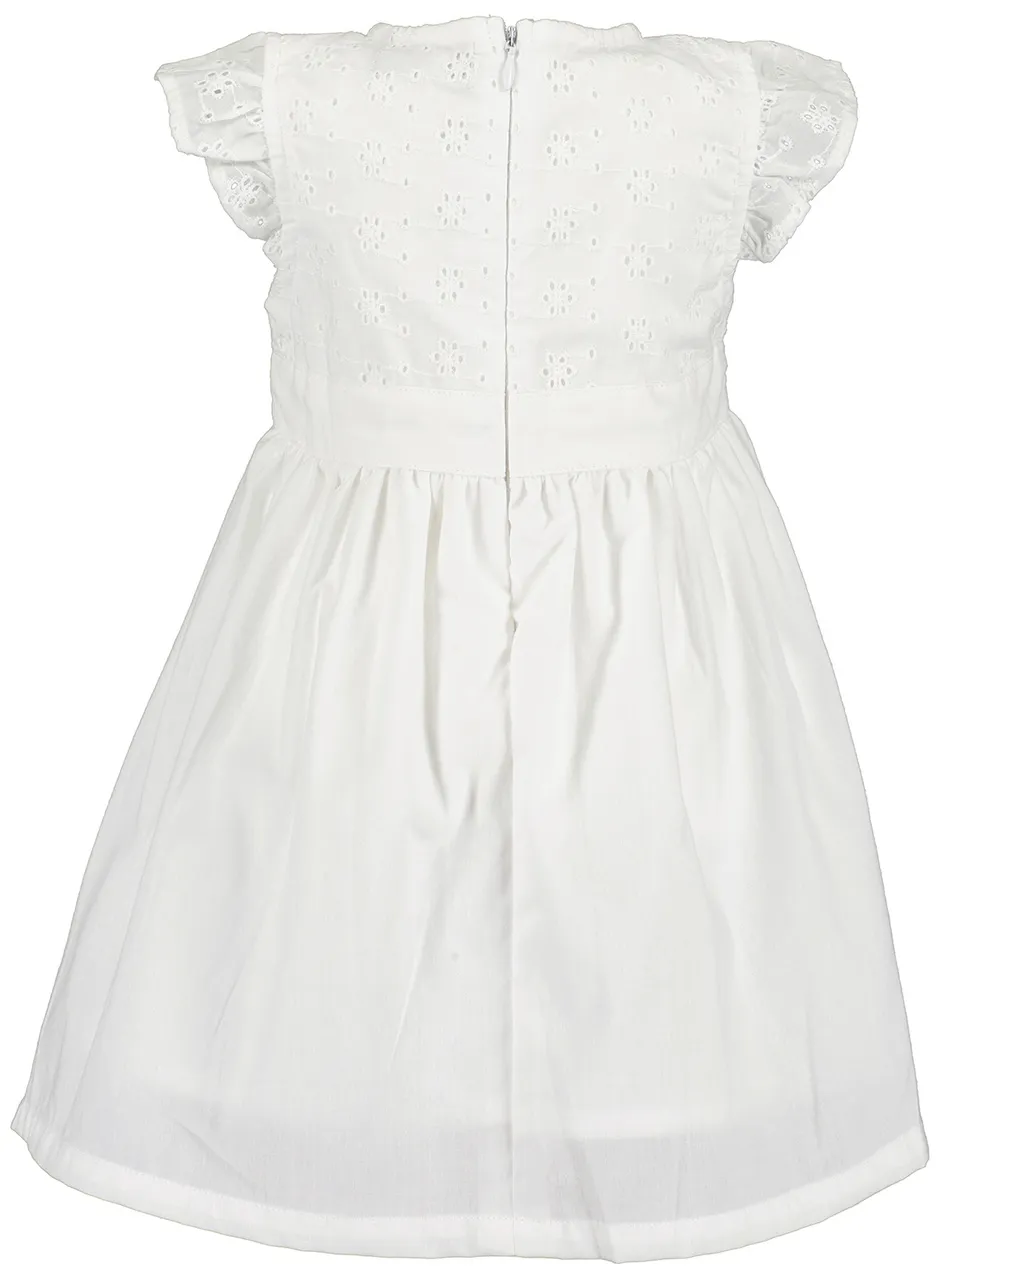 Kleid FESTIVE LACE in weiß